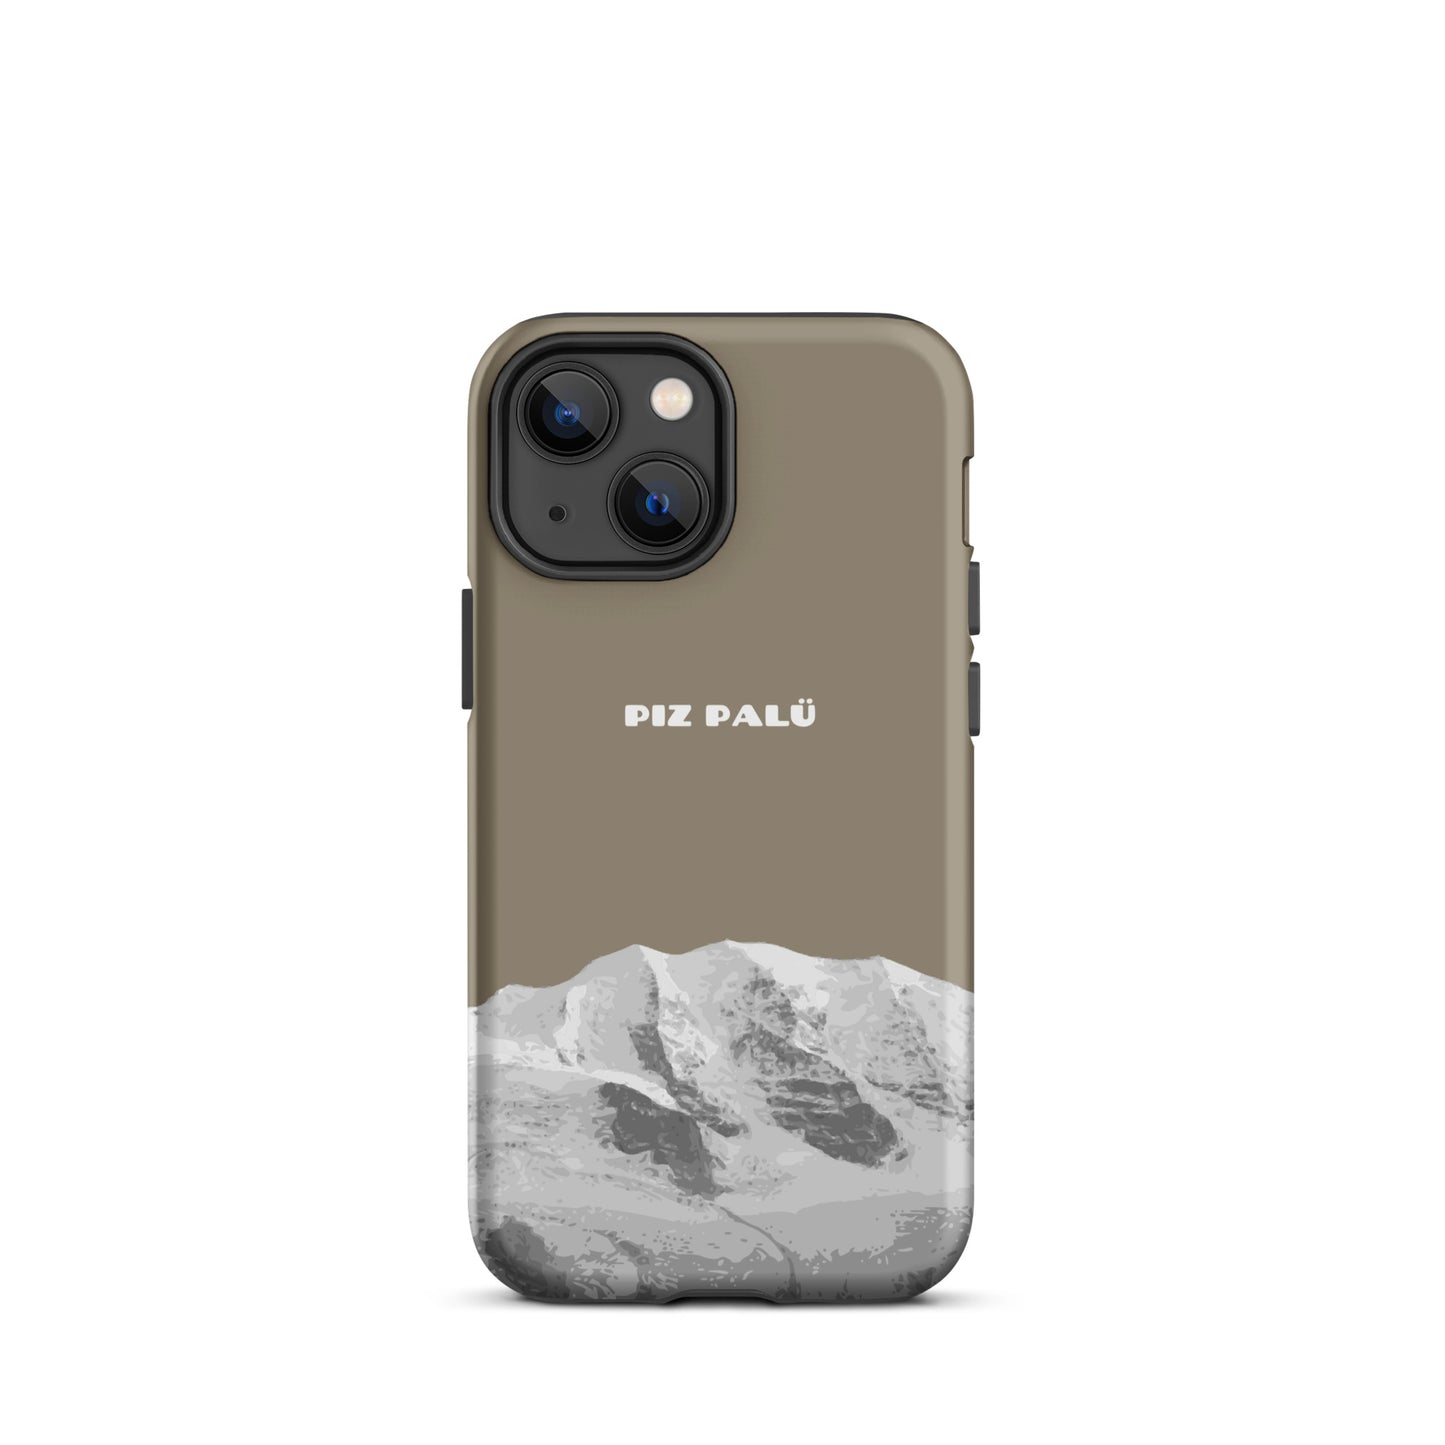 Hülle für das iPhone 13 Mini von Apple in der Farbe Graubrau, dass den Piz Palü in Graubünden zeigt.